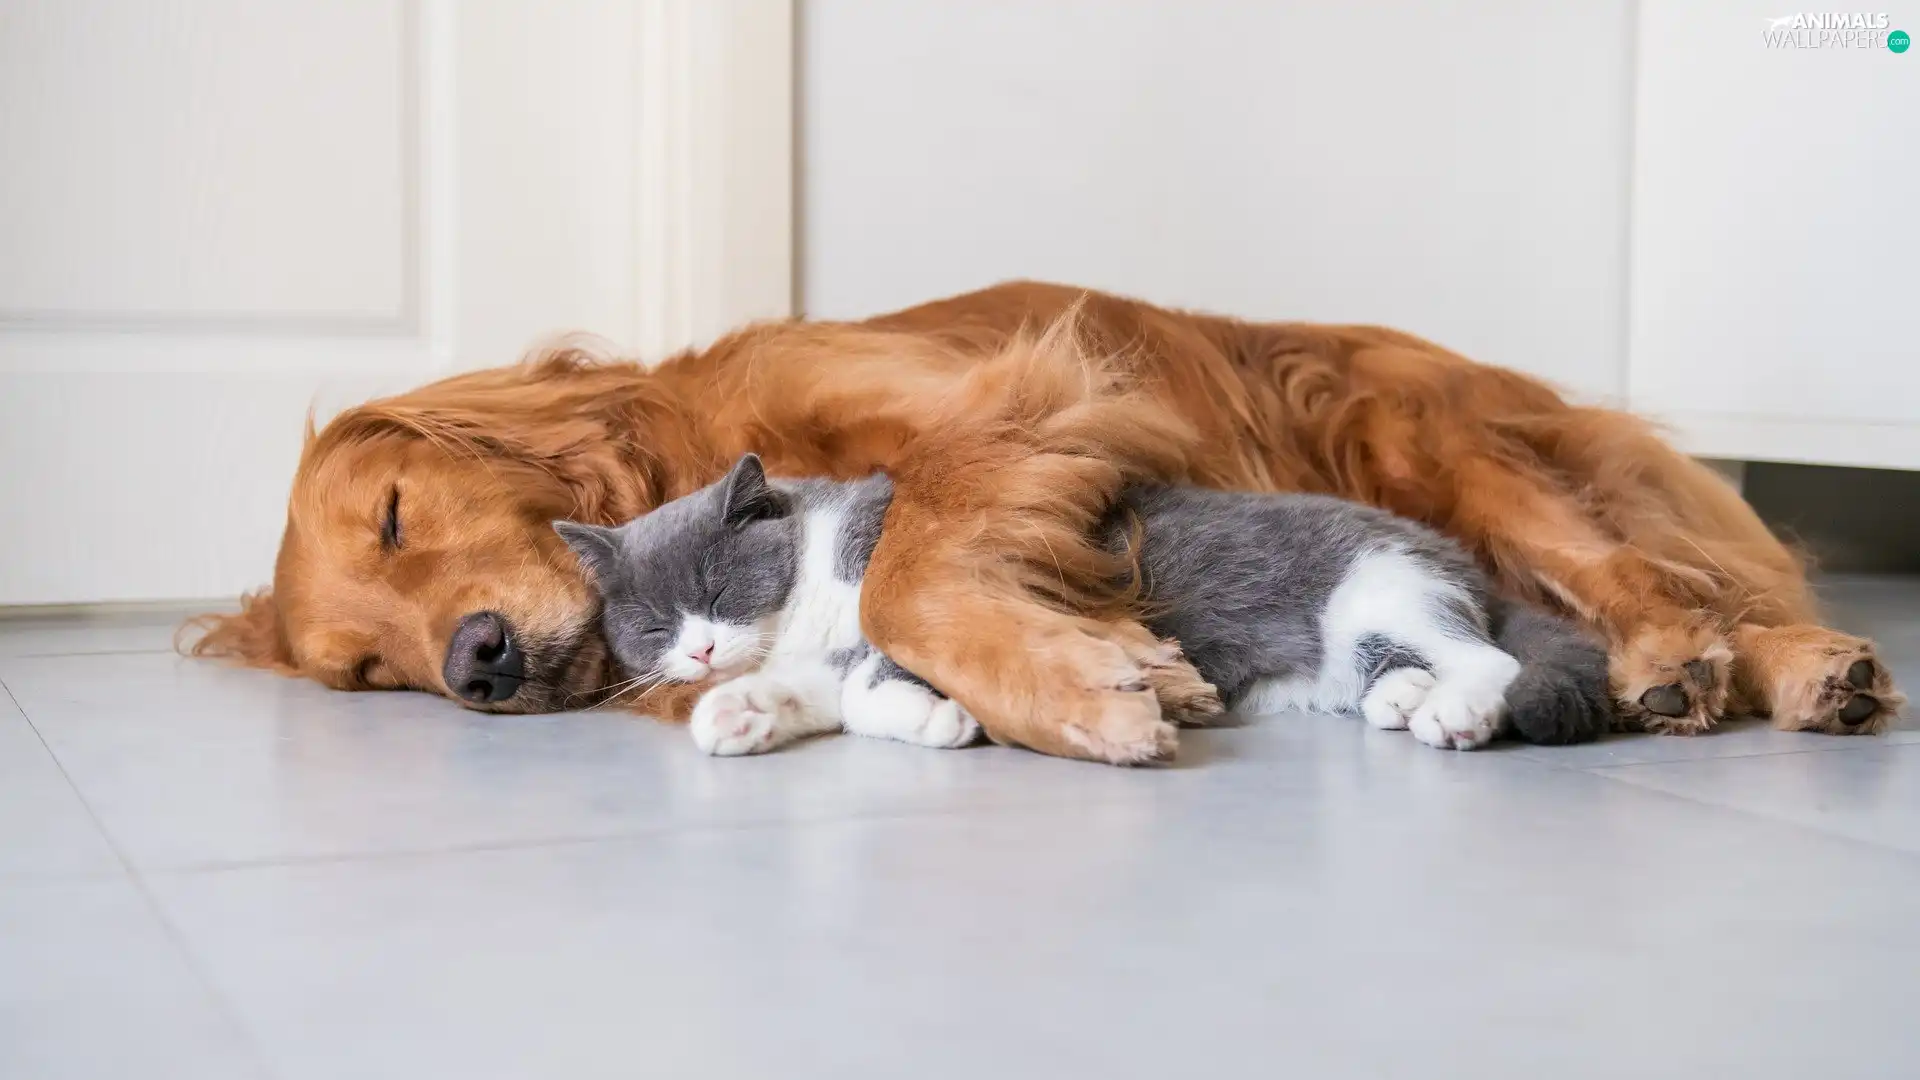 cat, floor, ginger, dog, sleepy